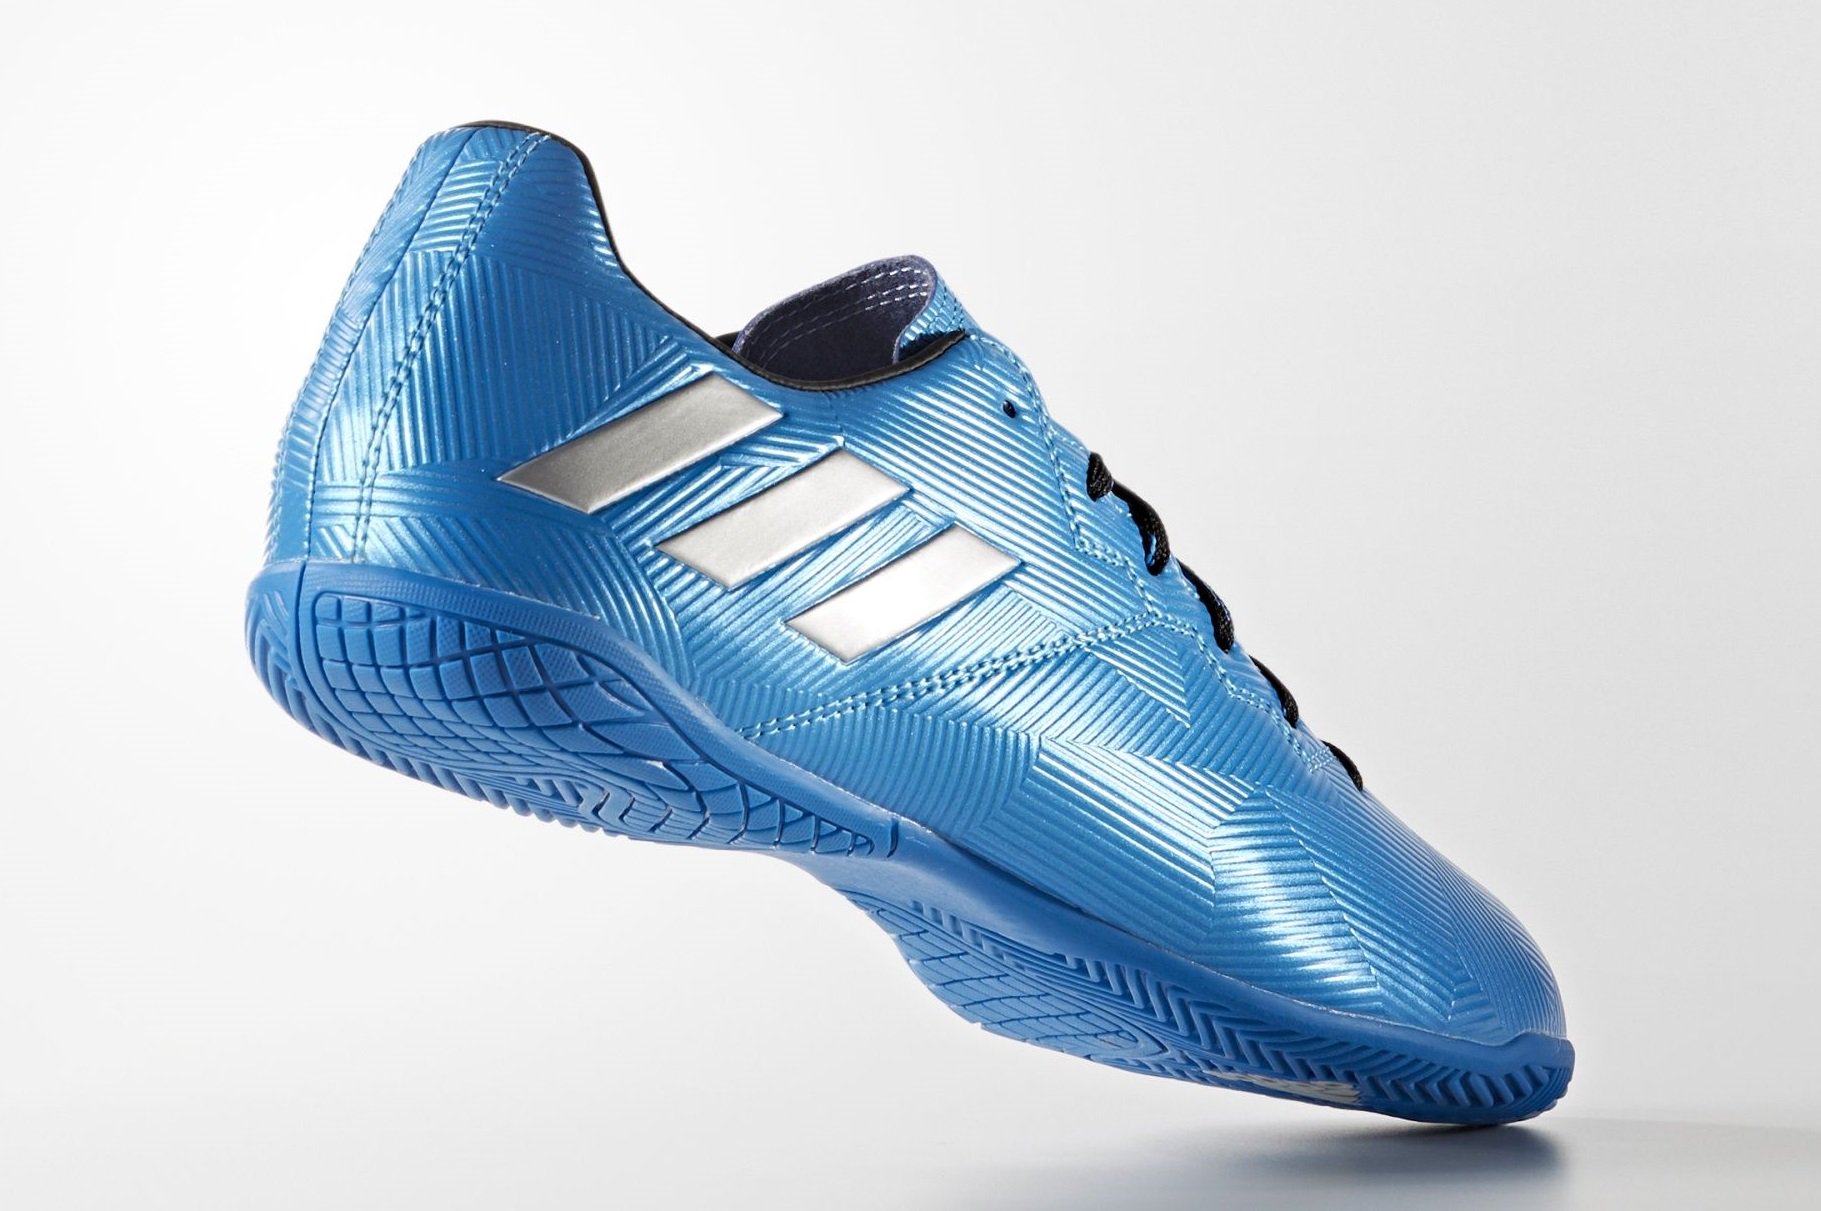 Regresa Inducir condón Boot Cleat on Twitter: "Adidas Messi 16.4 Indoor 16-17 Blue Shoes #adidas  #indoor https://t.co/JFhxfZM2iX https://t.co/CQXL8OCFU0" / Twitter